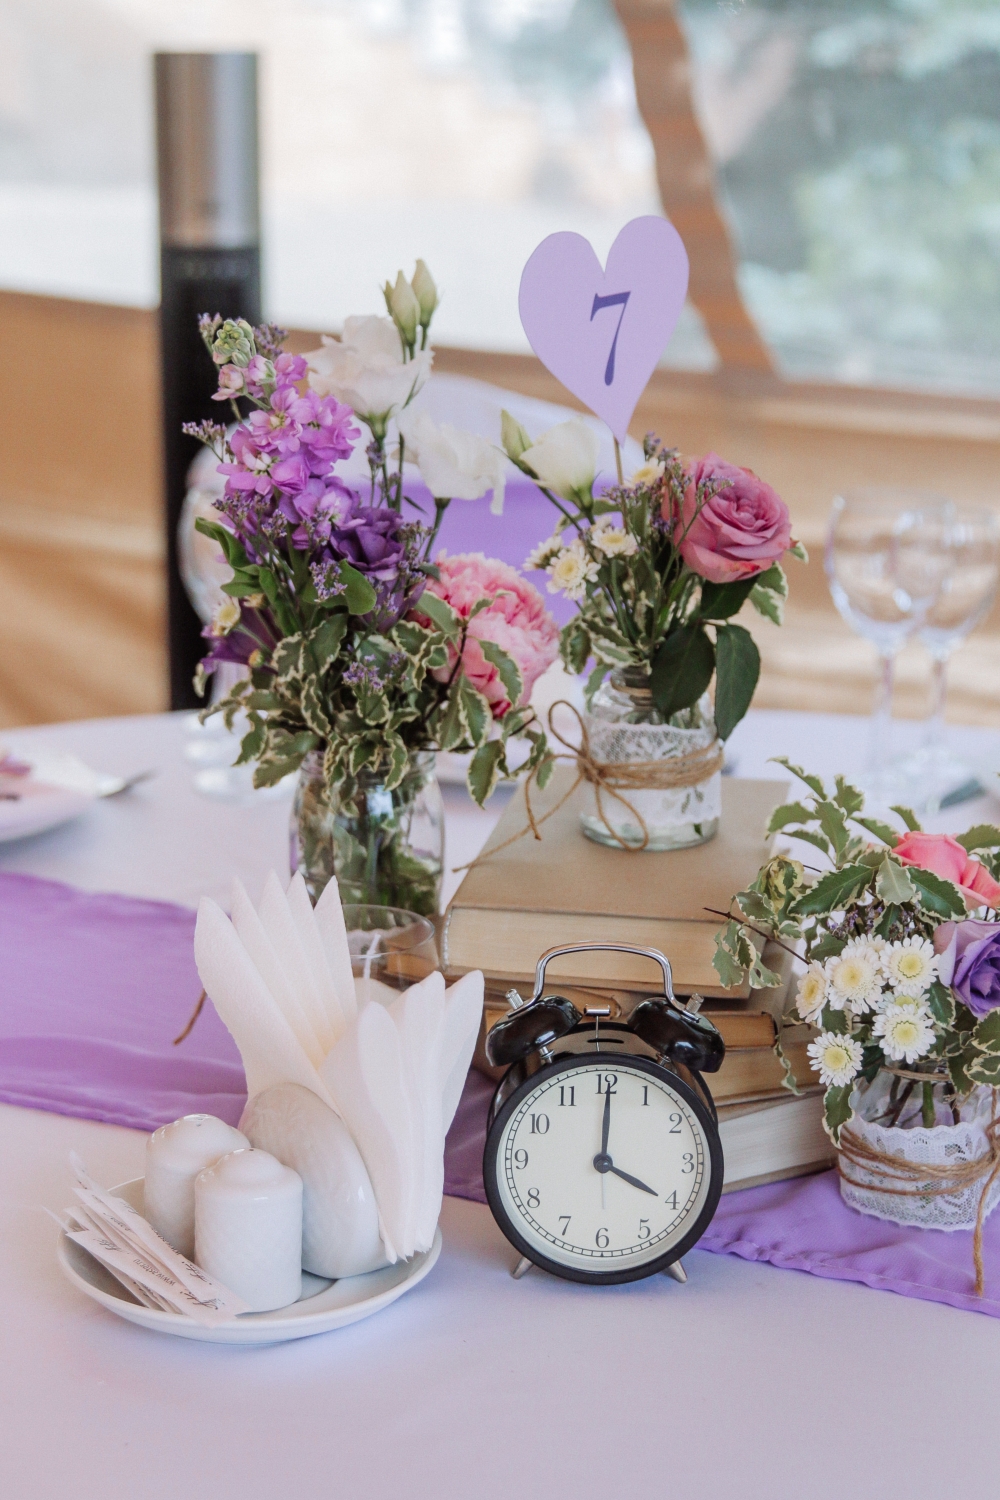 Оформление стола гостей в стиле Прованс. Летние цветы, кружева и холщевая ткань. Тема, которая никогда не выйдет из моды.